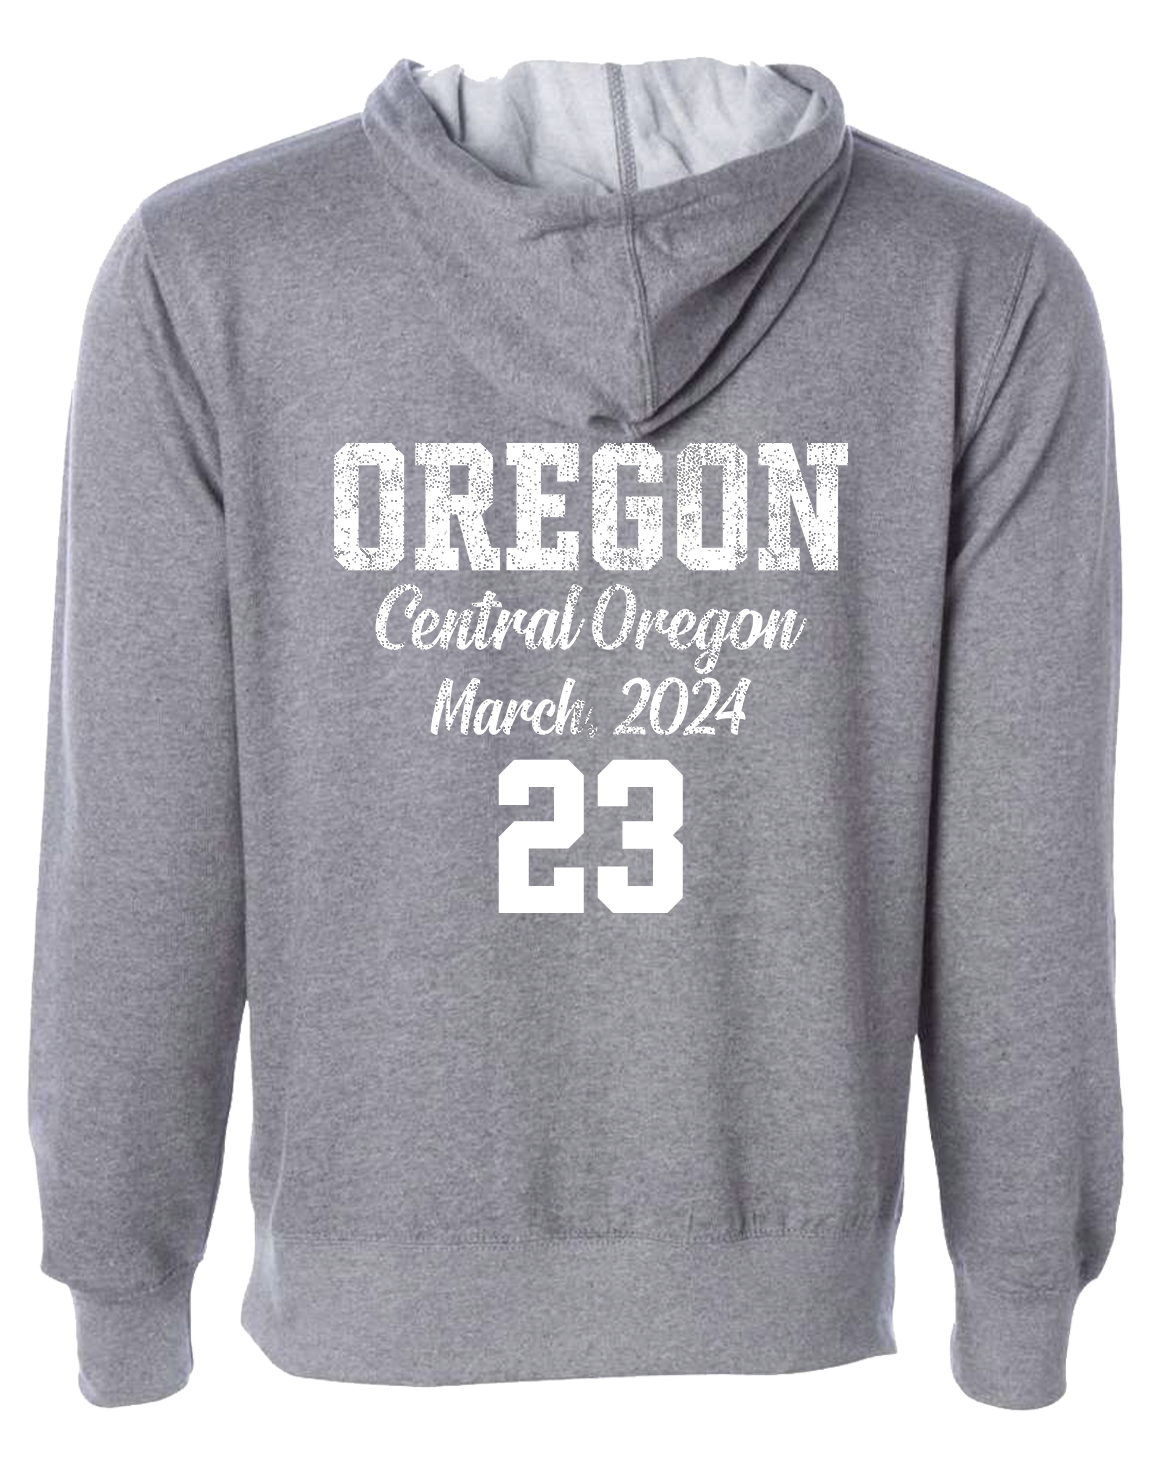 Grey Oregon State Basketball Sweatshirt